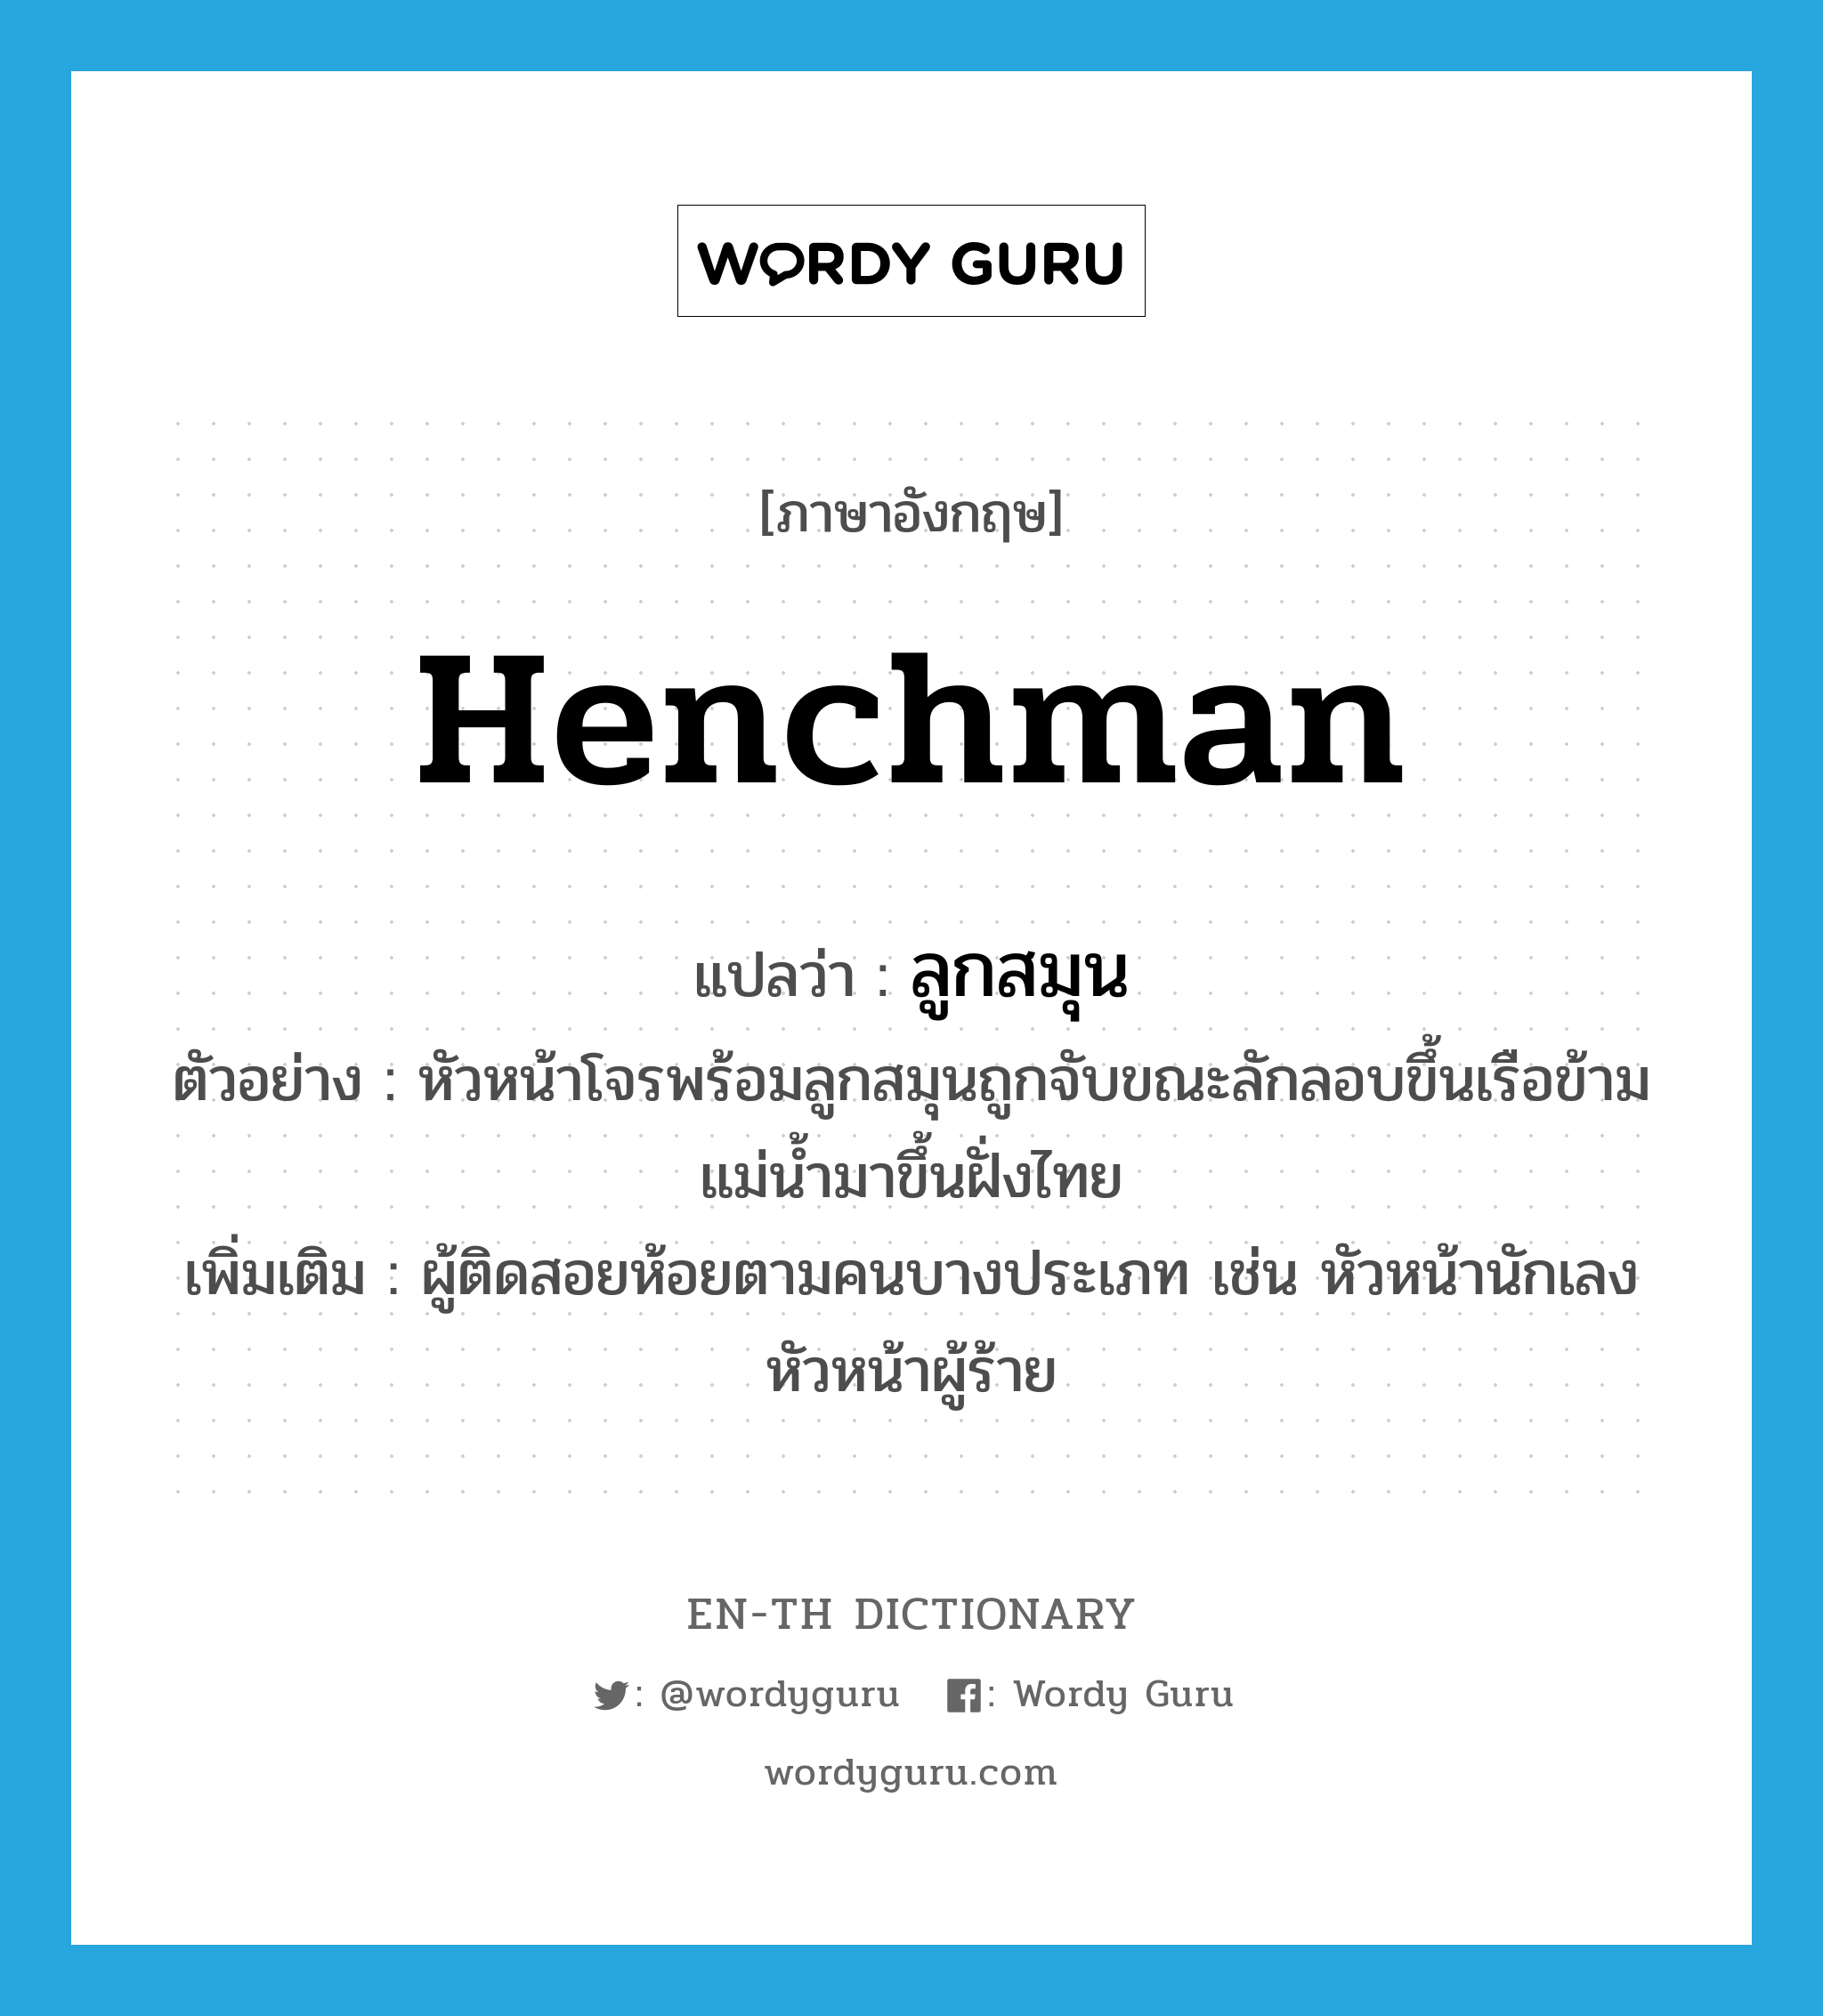 henchman แปลว่า?, คำศัพท์ภาษาอังกฤษ henchman แปลว่า ลูกสมุน ประเภท N ตัวอย่าง หัวหน้าโจรพร้อมลูกสมุนถูกจับขณะลักลอบขึ้นเรือข้ามแม่น้ำมาขึ้นฝั่งไทย เพิ่มเติม ผู้ติดสอยห้อยตามคนบางประเภท เช่น หัวหน้านักเลง หัวหน้าผู้ร้าย หมวด N